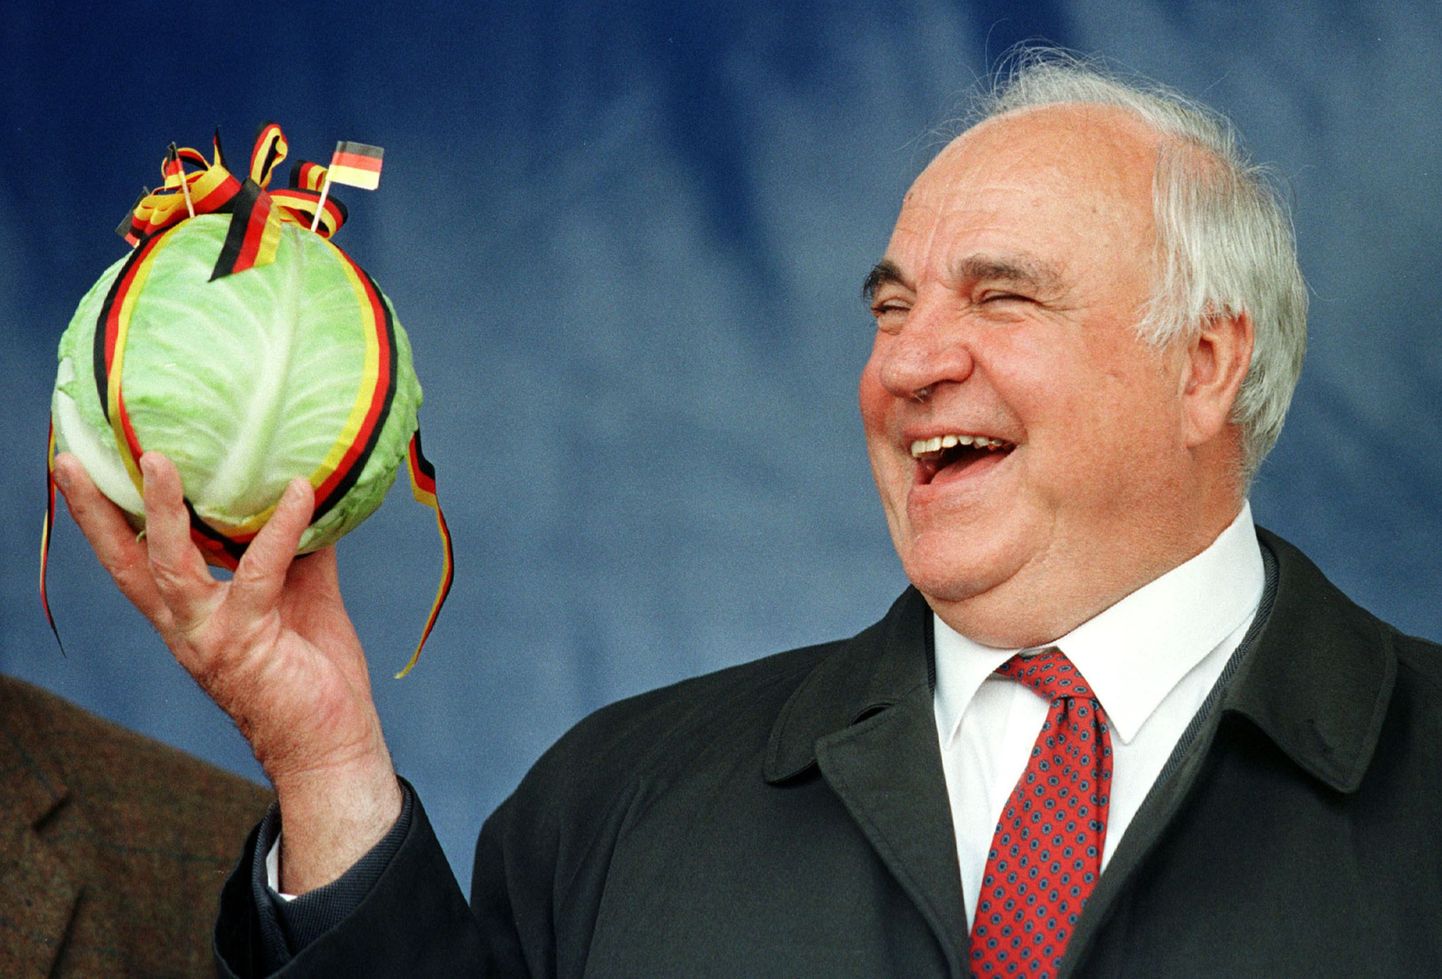 Heatujuline Helmut Kohl naerab nn kapsanalja üle. Kohl tähendab saksa keeles kapsast.